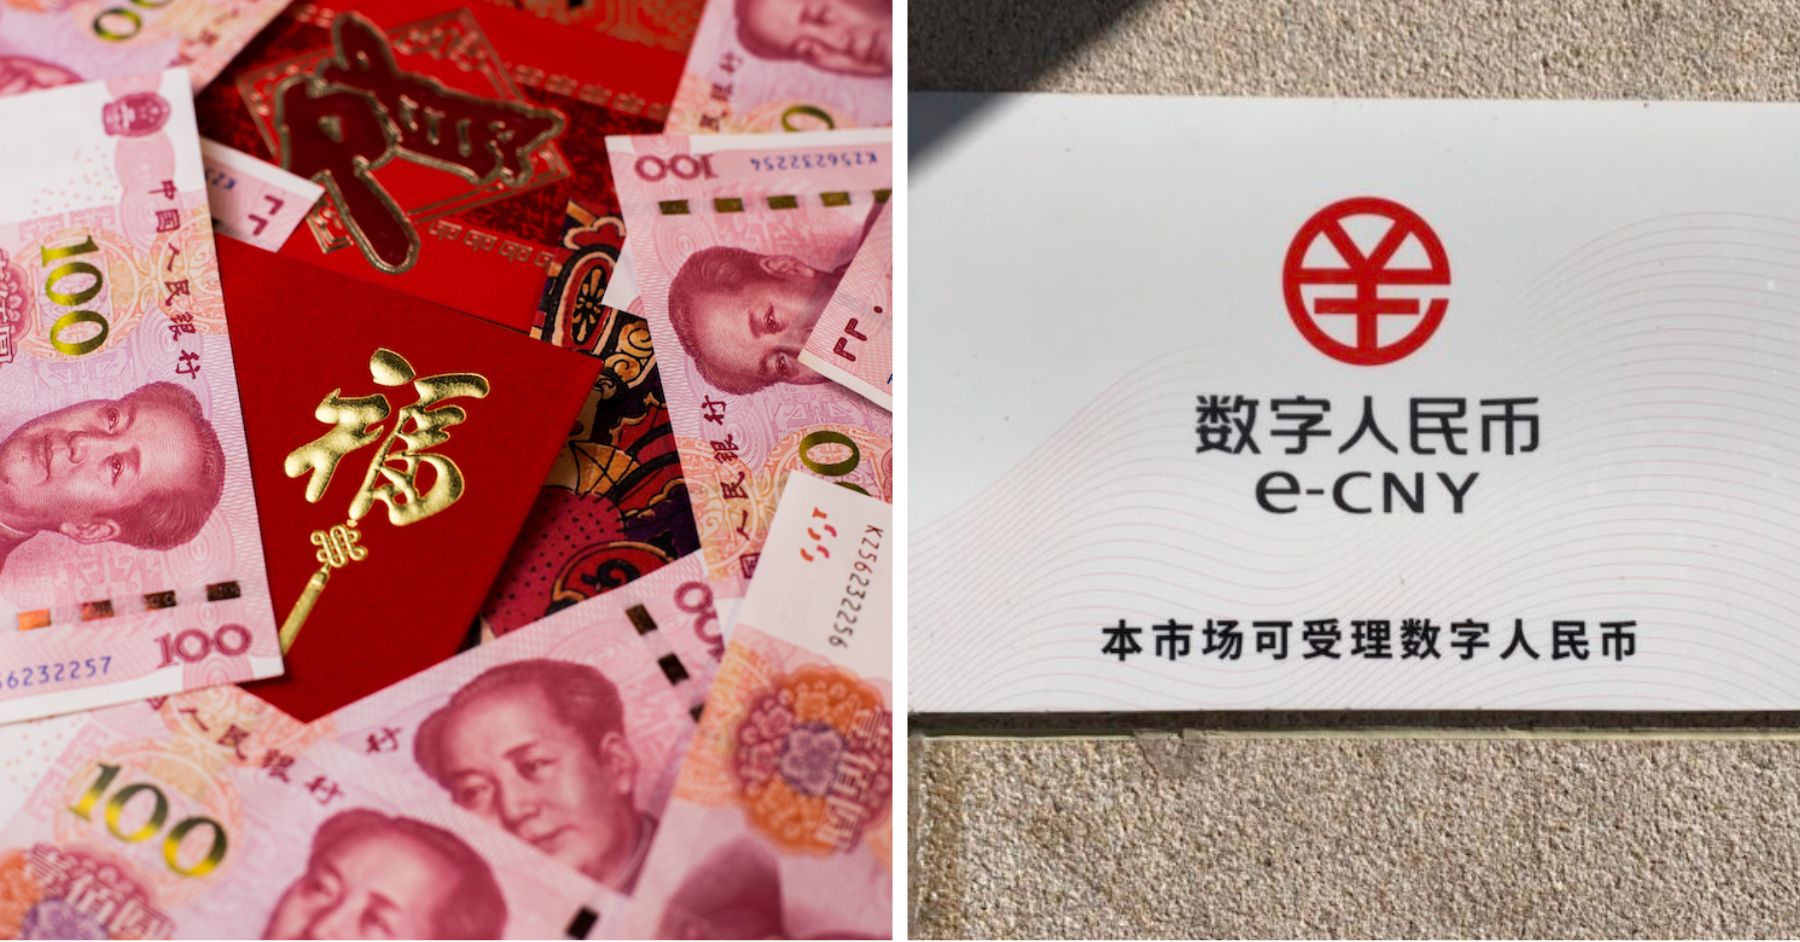 विशेषज्ञों का कहना है कि गोद लेने को बढ़ावा देने के लिए चीन के डिजिटल युआन को WeChat, Alipay की जरूरत है